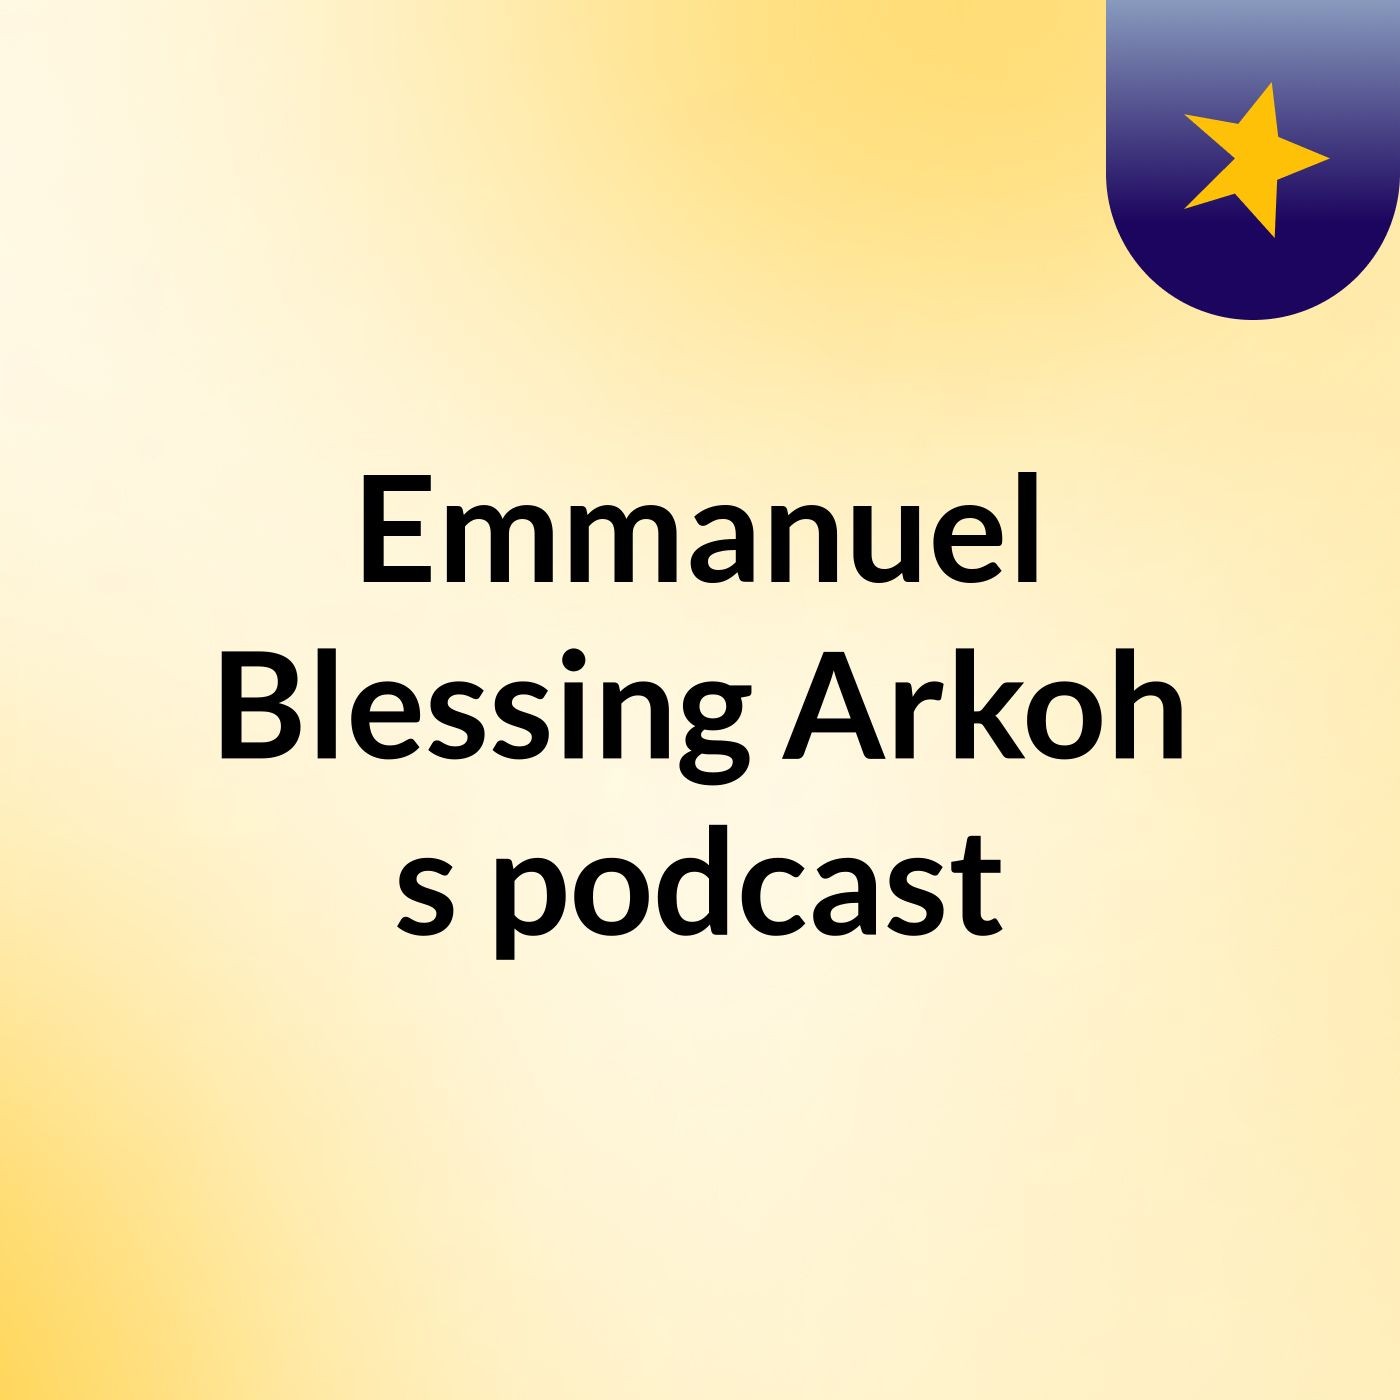 Episode 12 - Emmanuel Blessing Arkoh's podcast